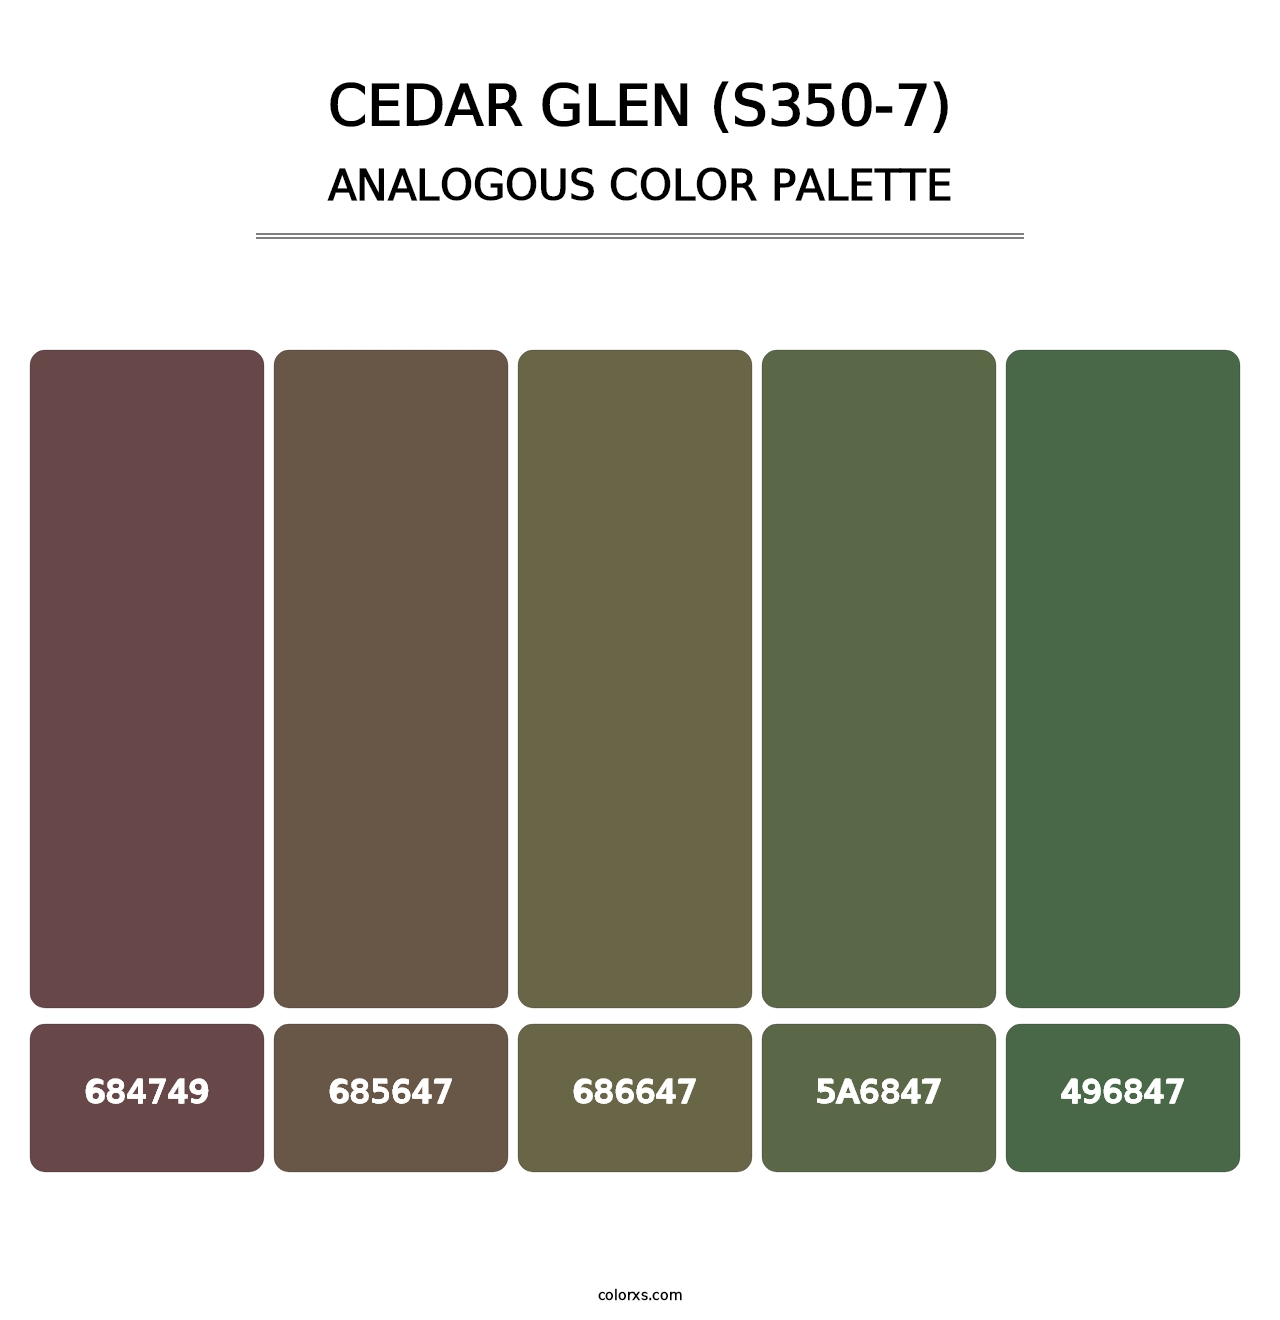 Cedar Glen (S350-7) - Analogous Color Palette